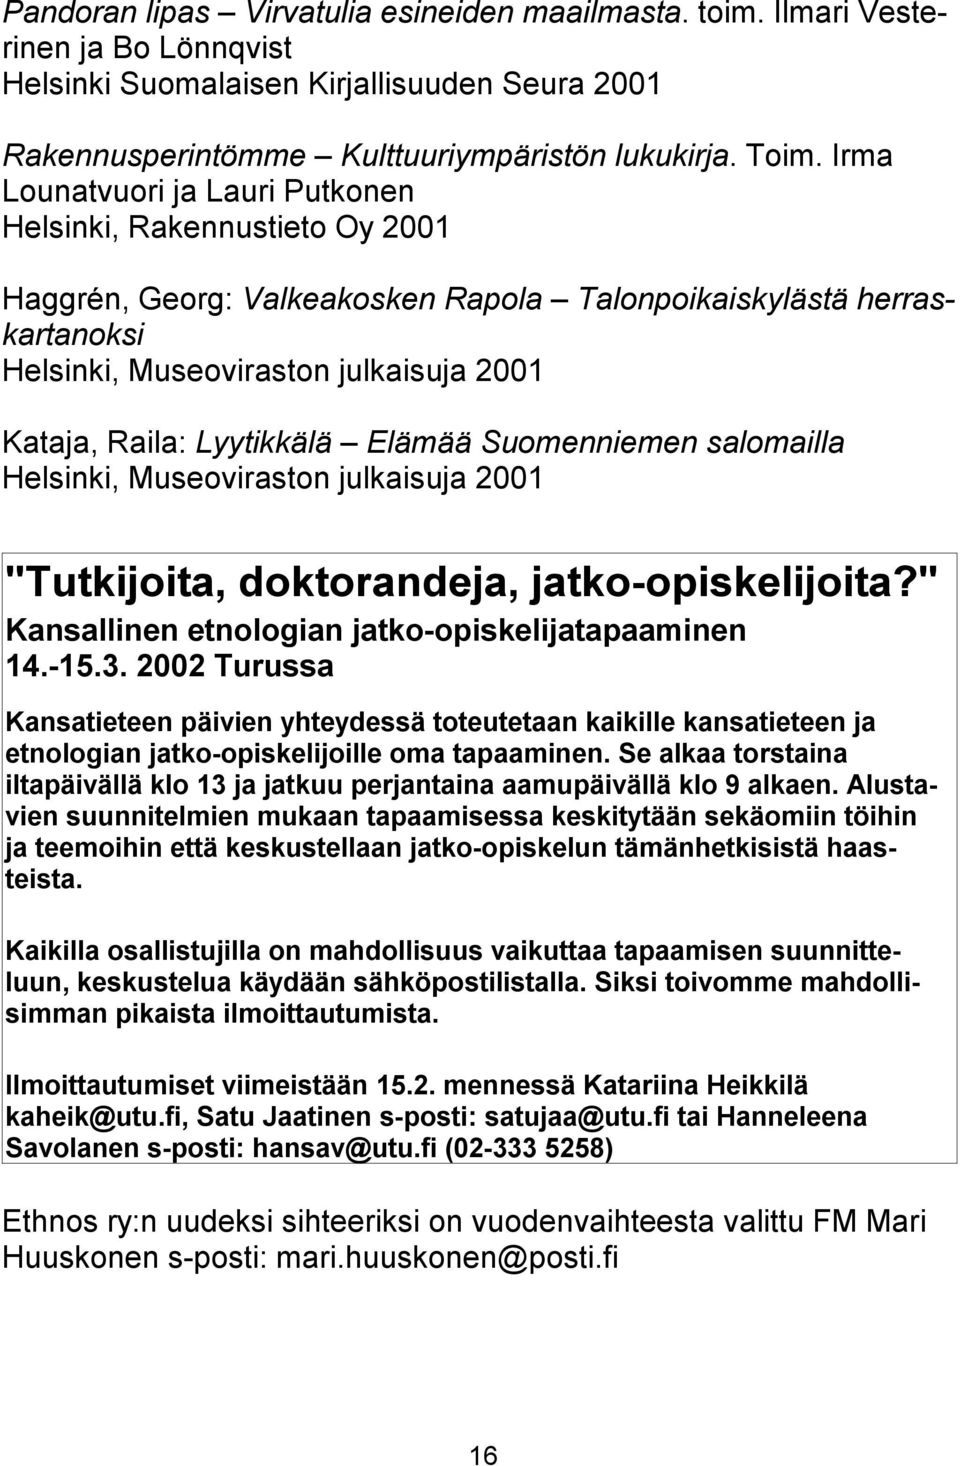 Lyytikkälä Elämää Suomenniemen salomailla Helsinki, Museoviraston julkaisuja 2001 "Tutkijoita, doktorandeja, jatko-opiskelijoita?" Kansallinen etnologian jatko-opiskelijatapaaminen 14.-15.3.